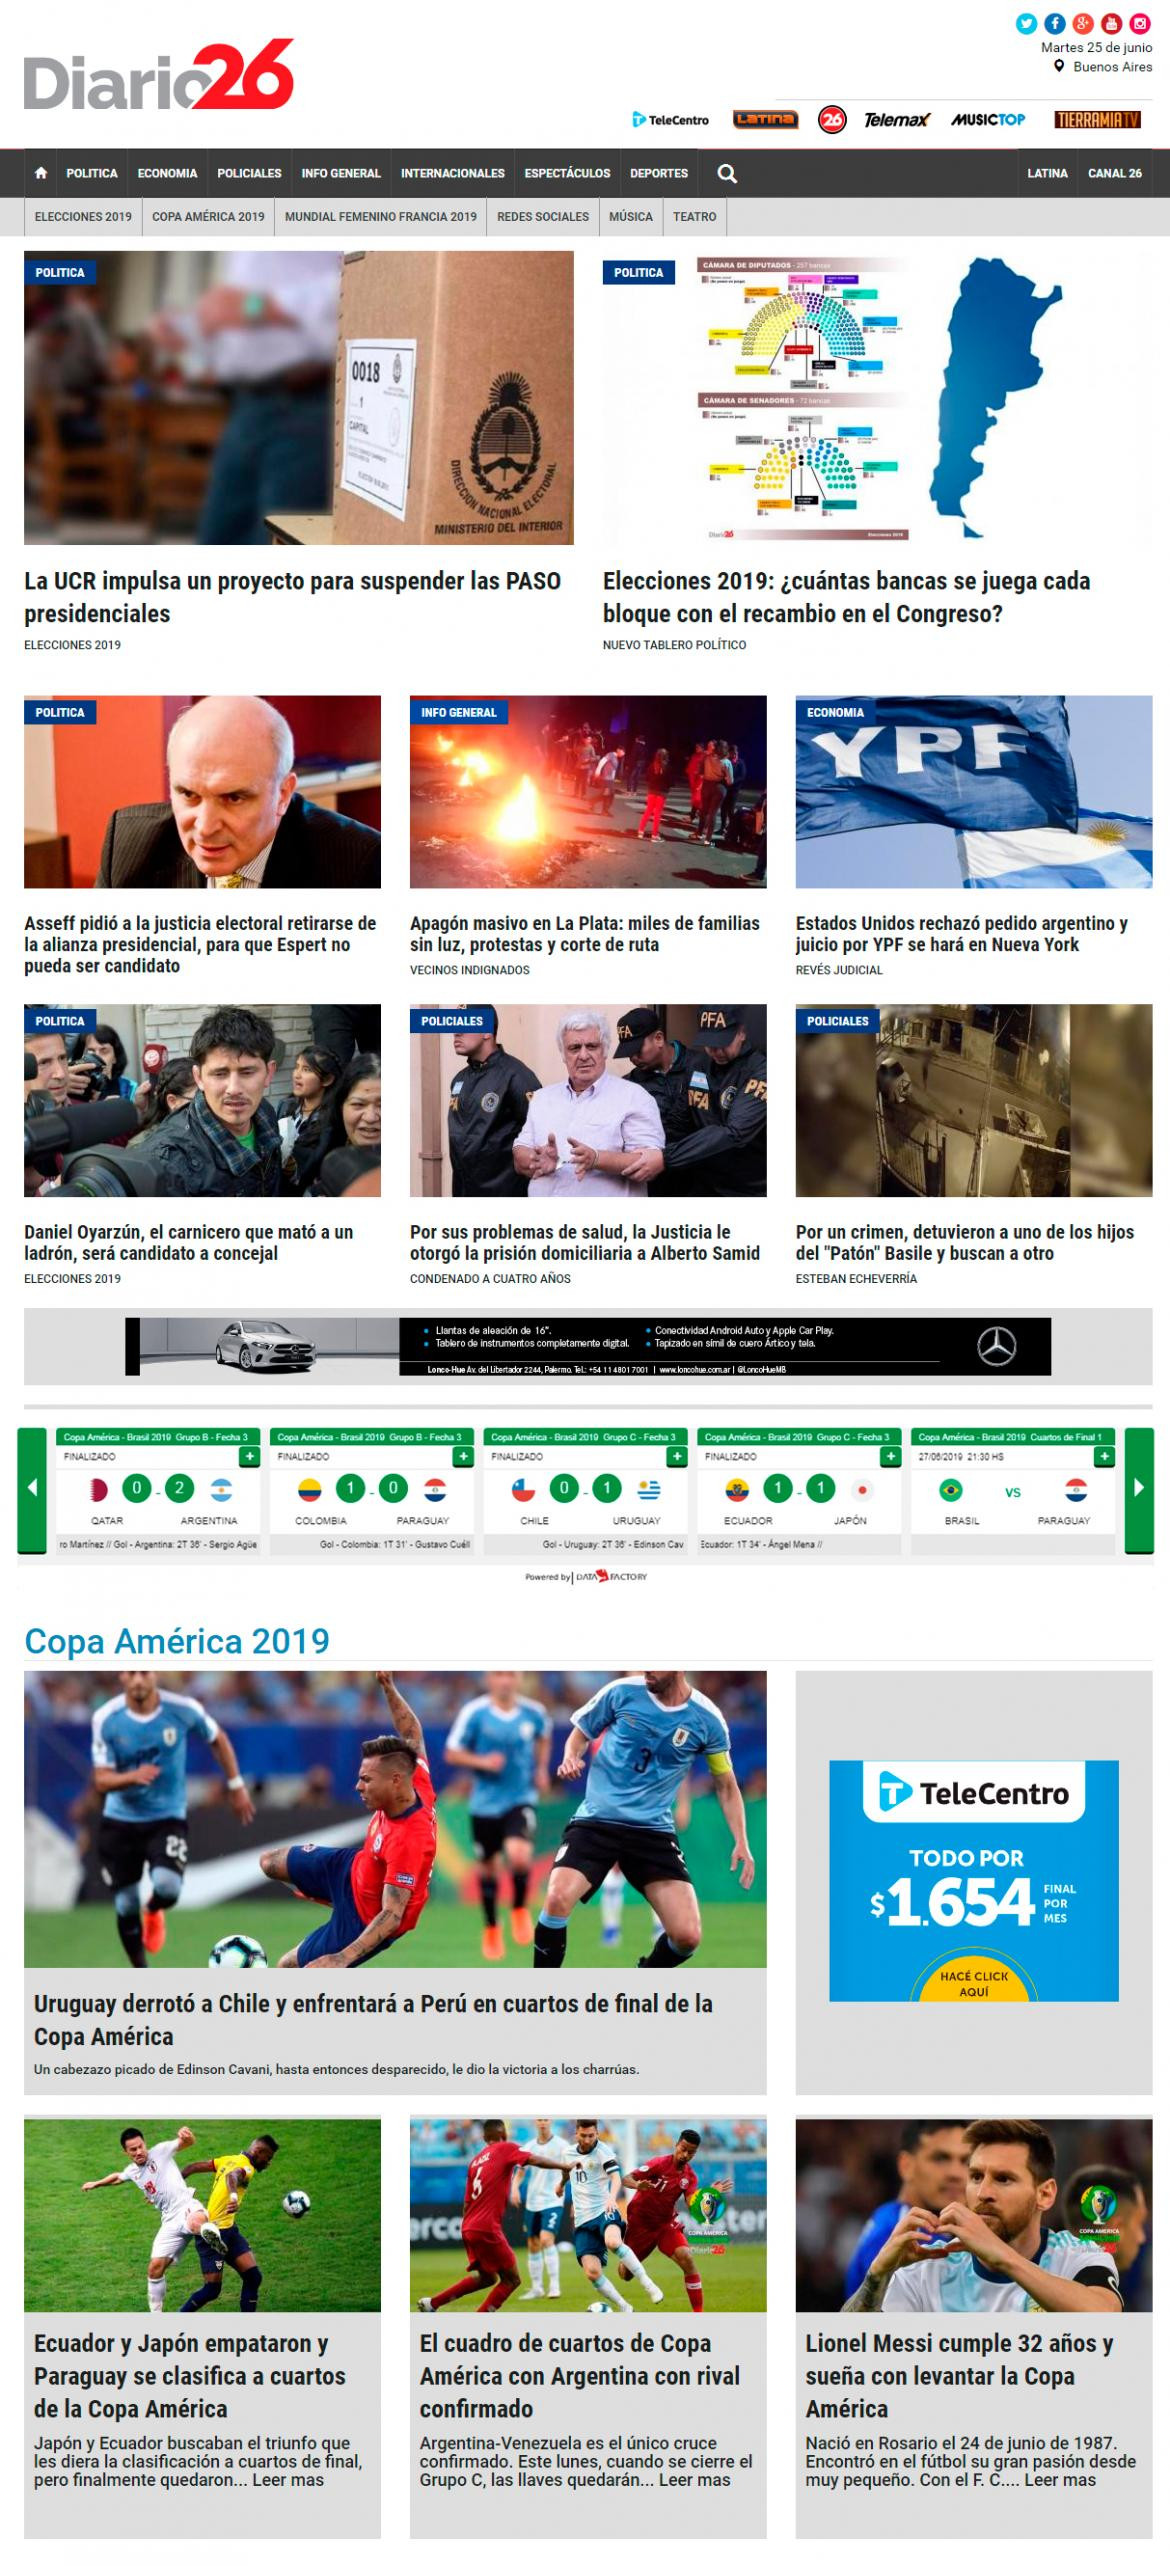 Tapas de diarios - Diario 26 - martes 25-06-19